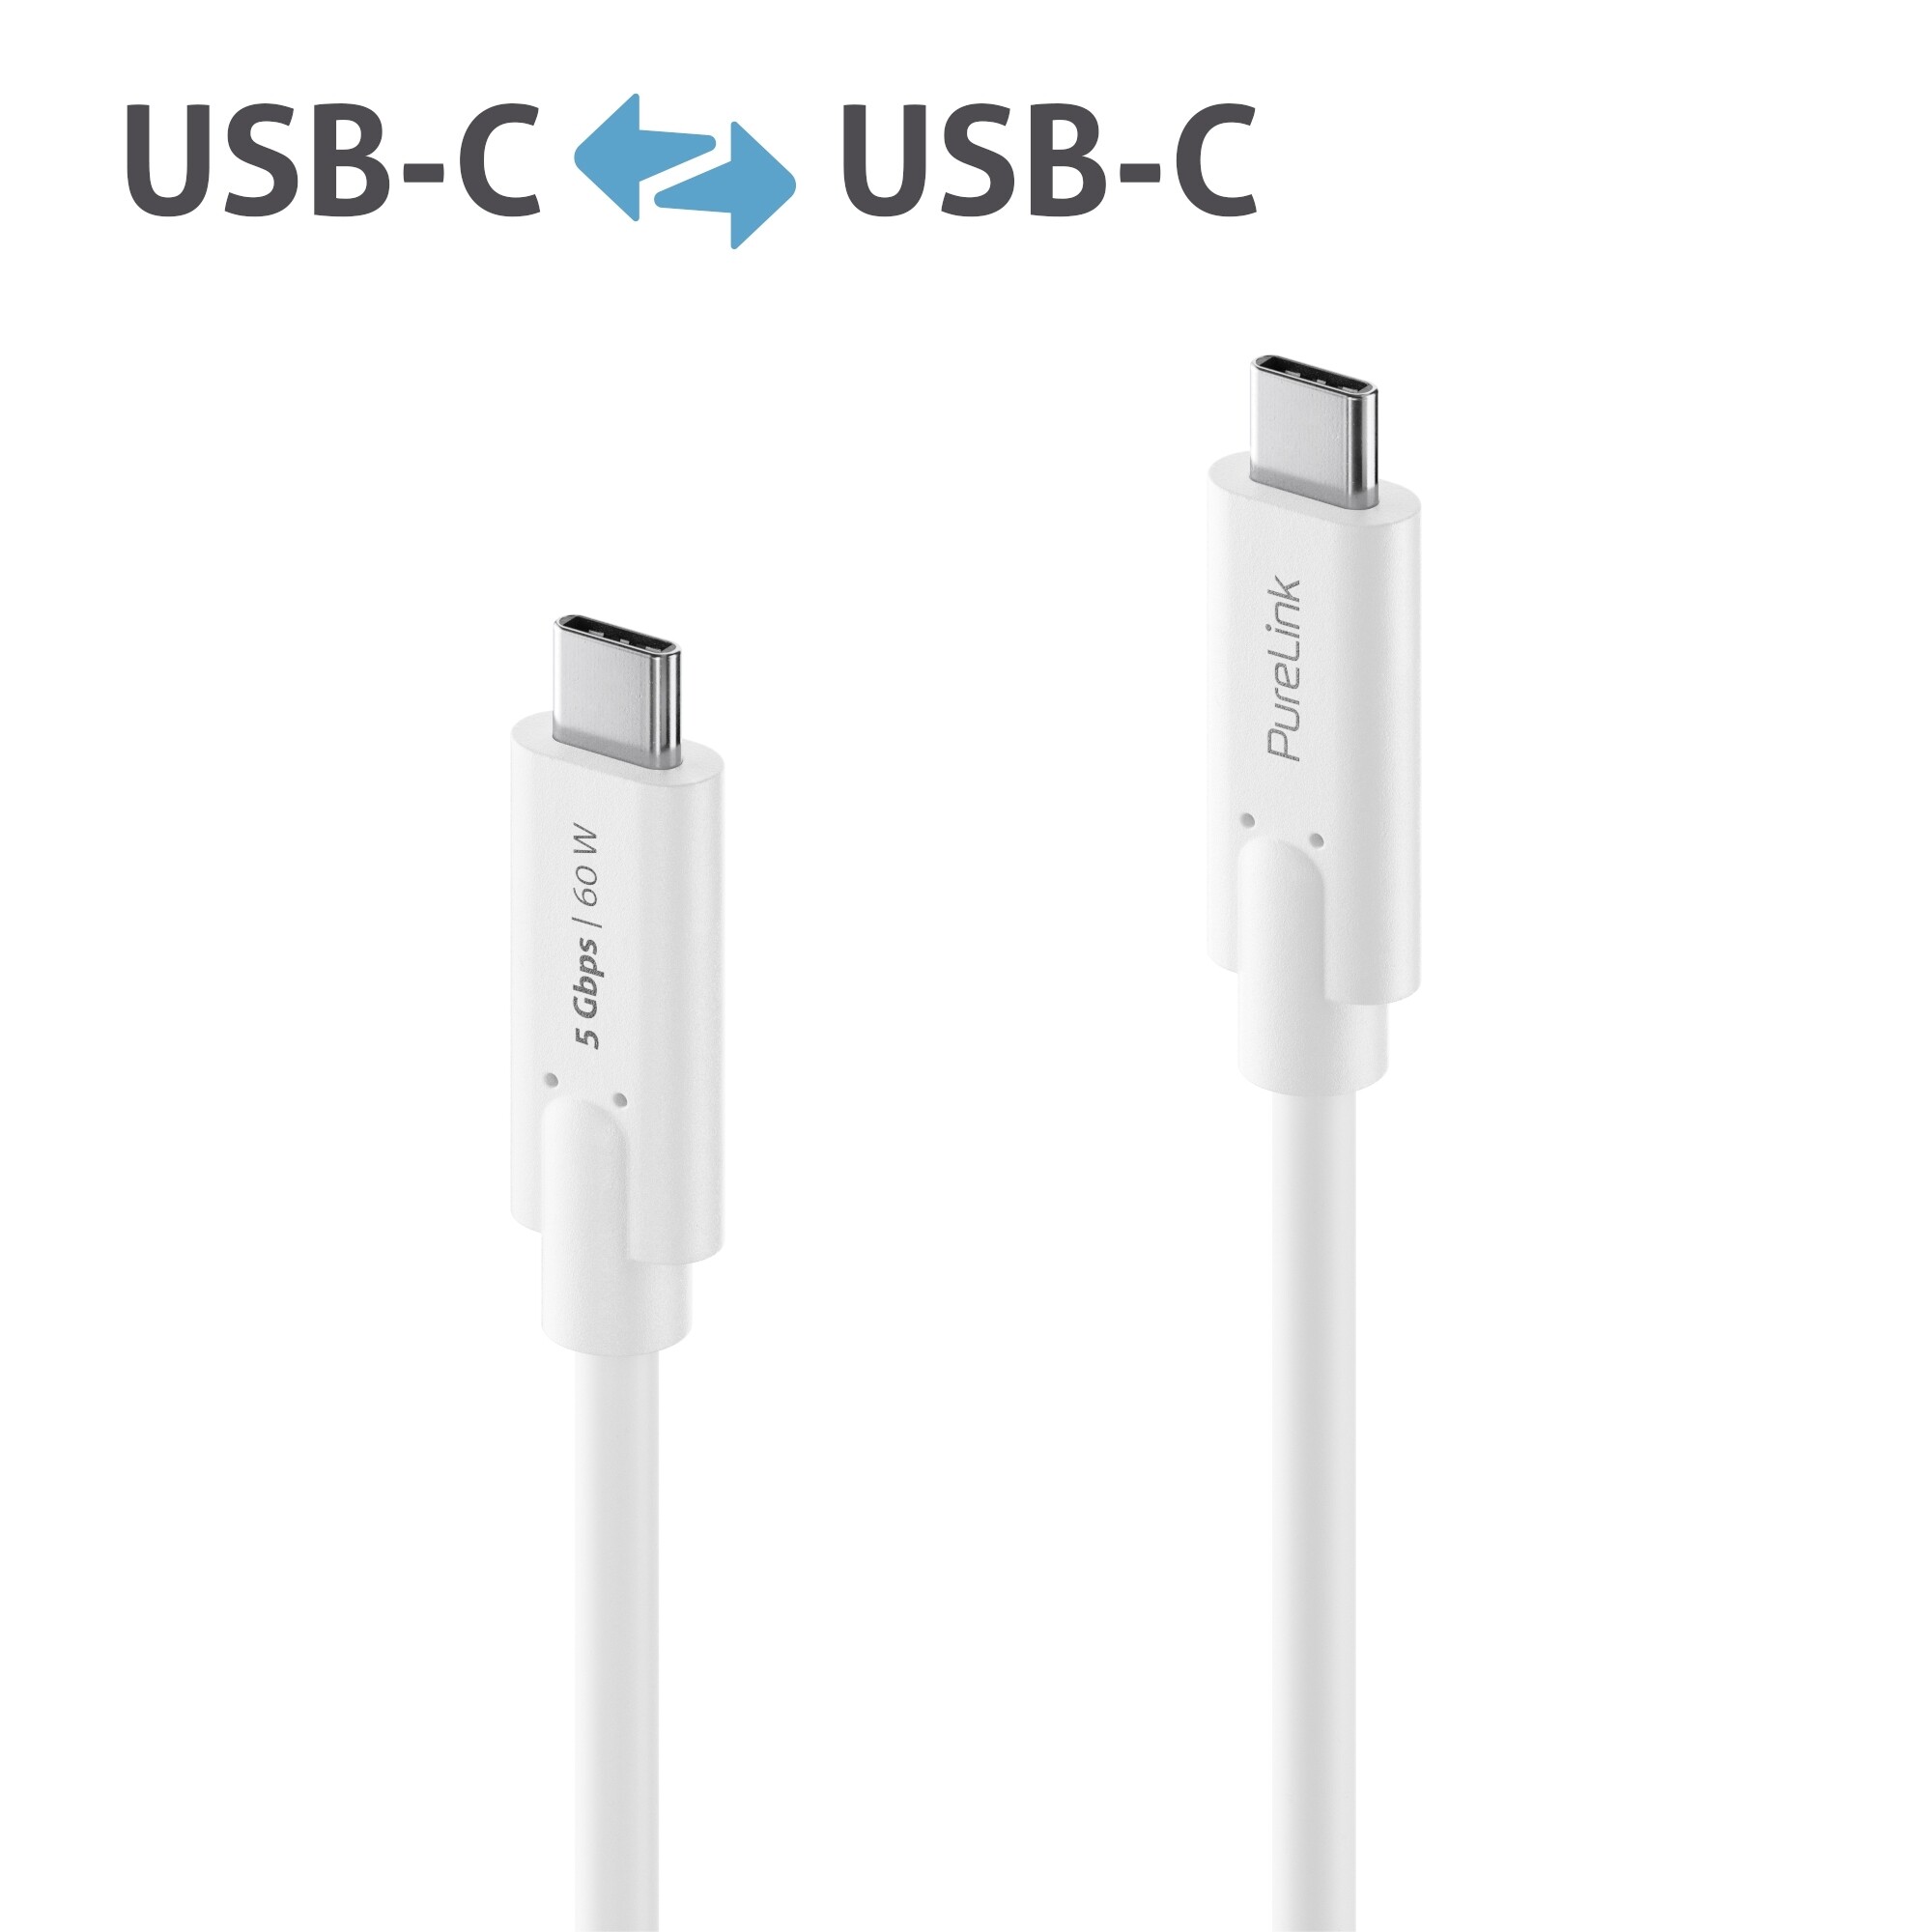 Purelink-IS2500-020-USB-C-auf-USB-C-Kabel-2m-weiss